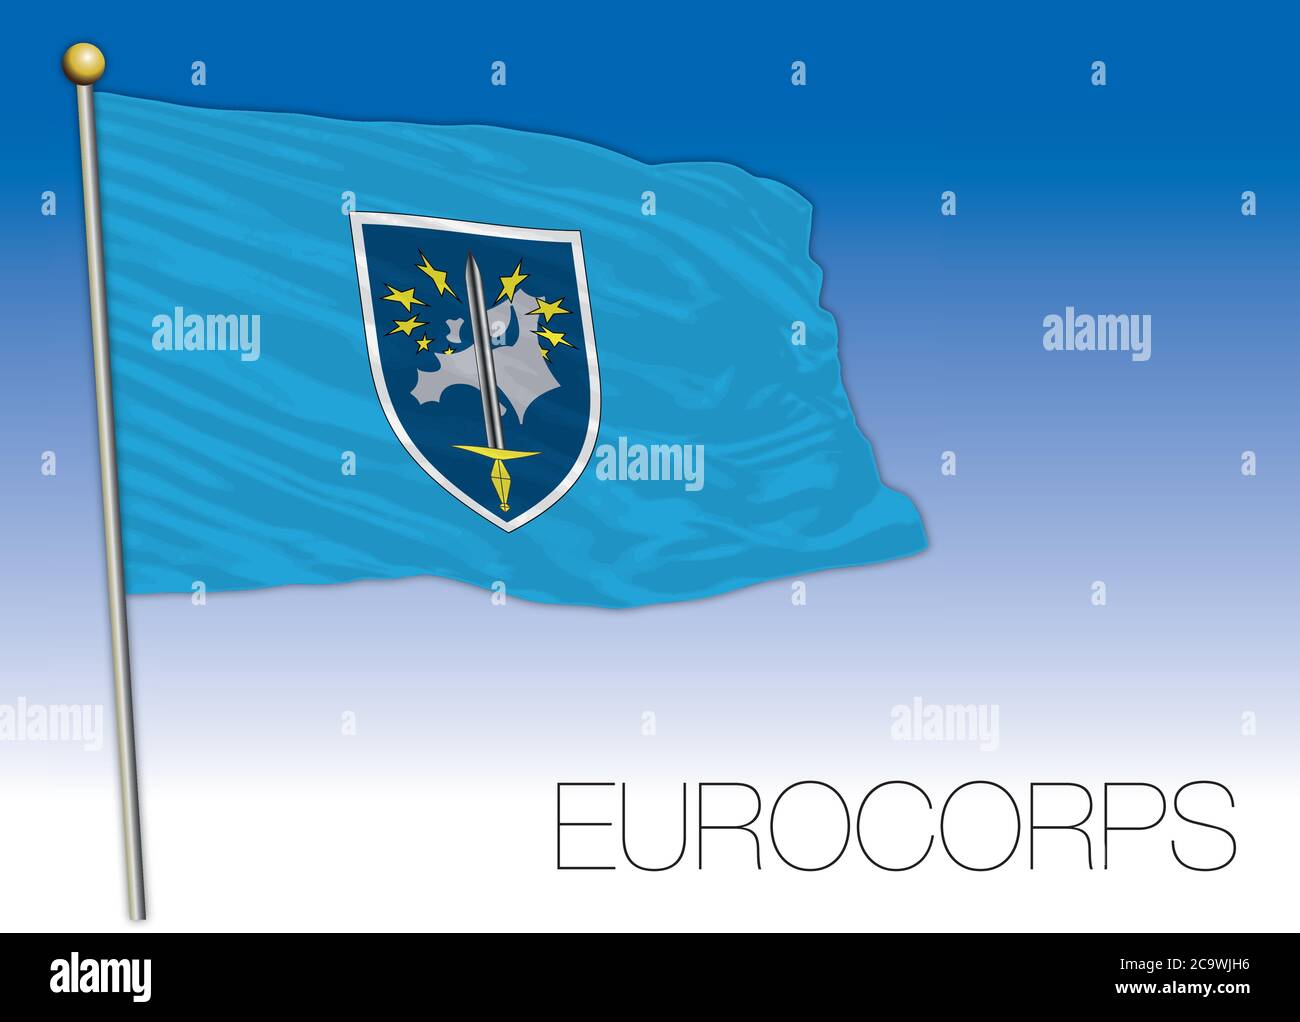 Drapeau de la force militaire multinationale européenne Eurocorps, illustration vectorielle Illustration de Vecteur